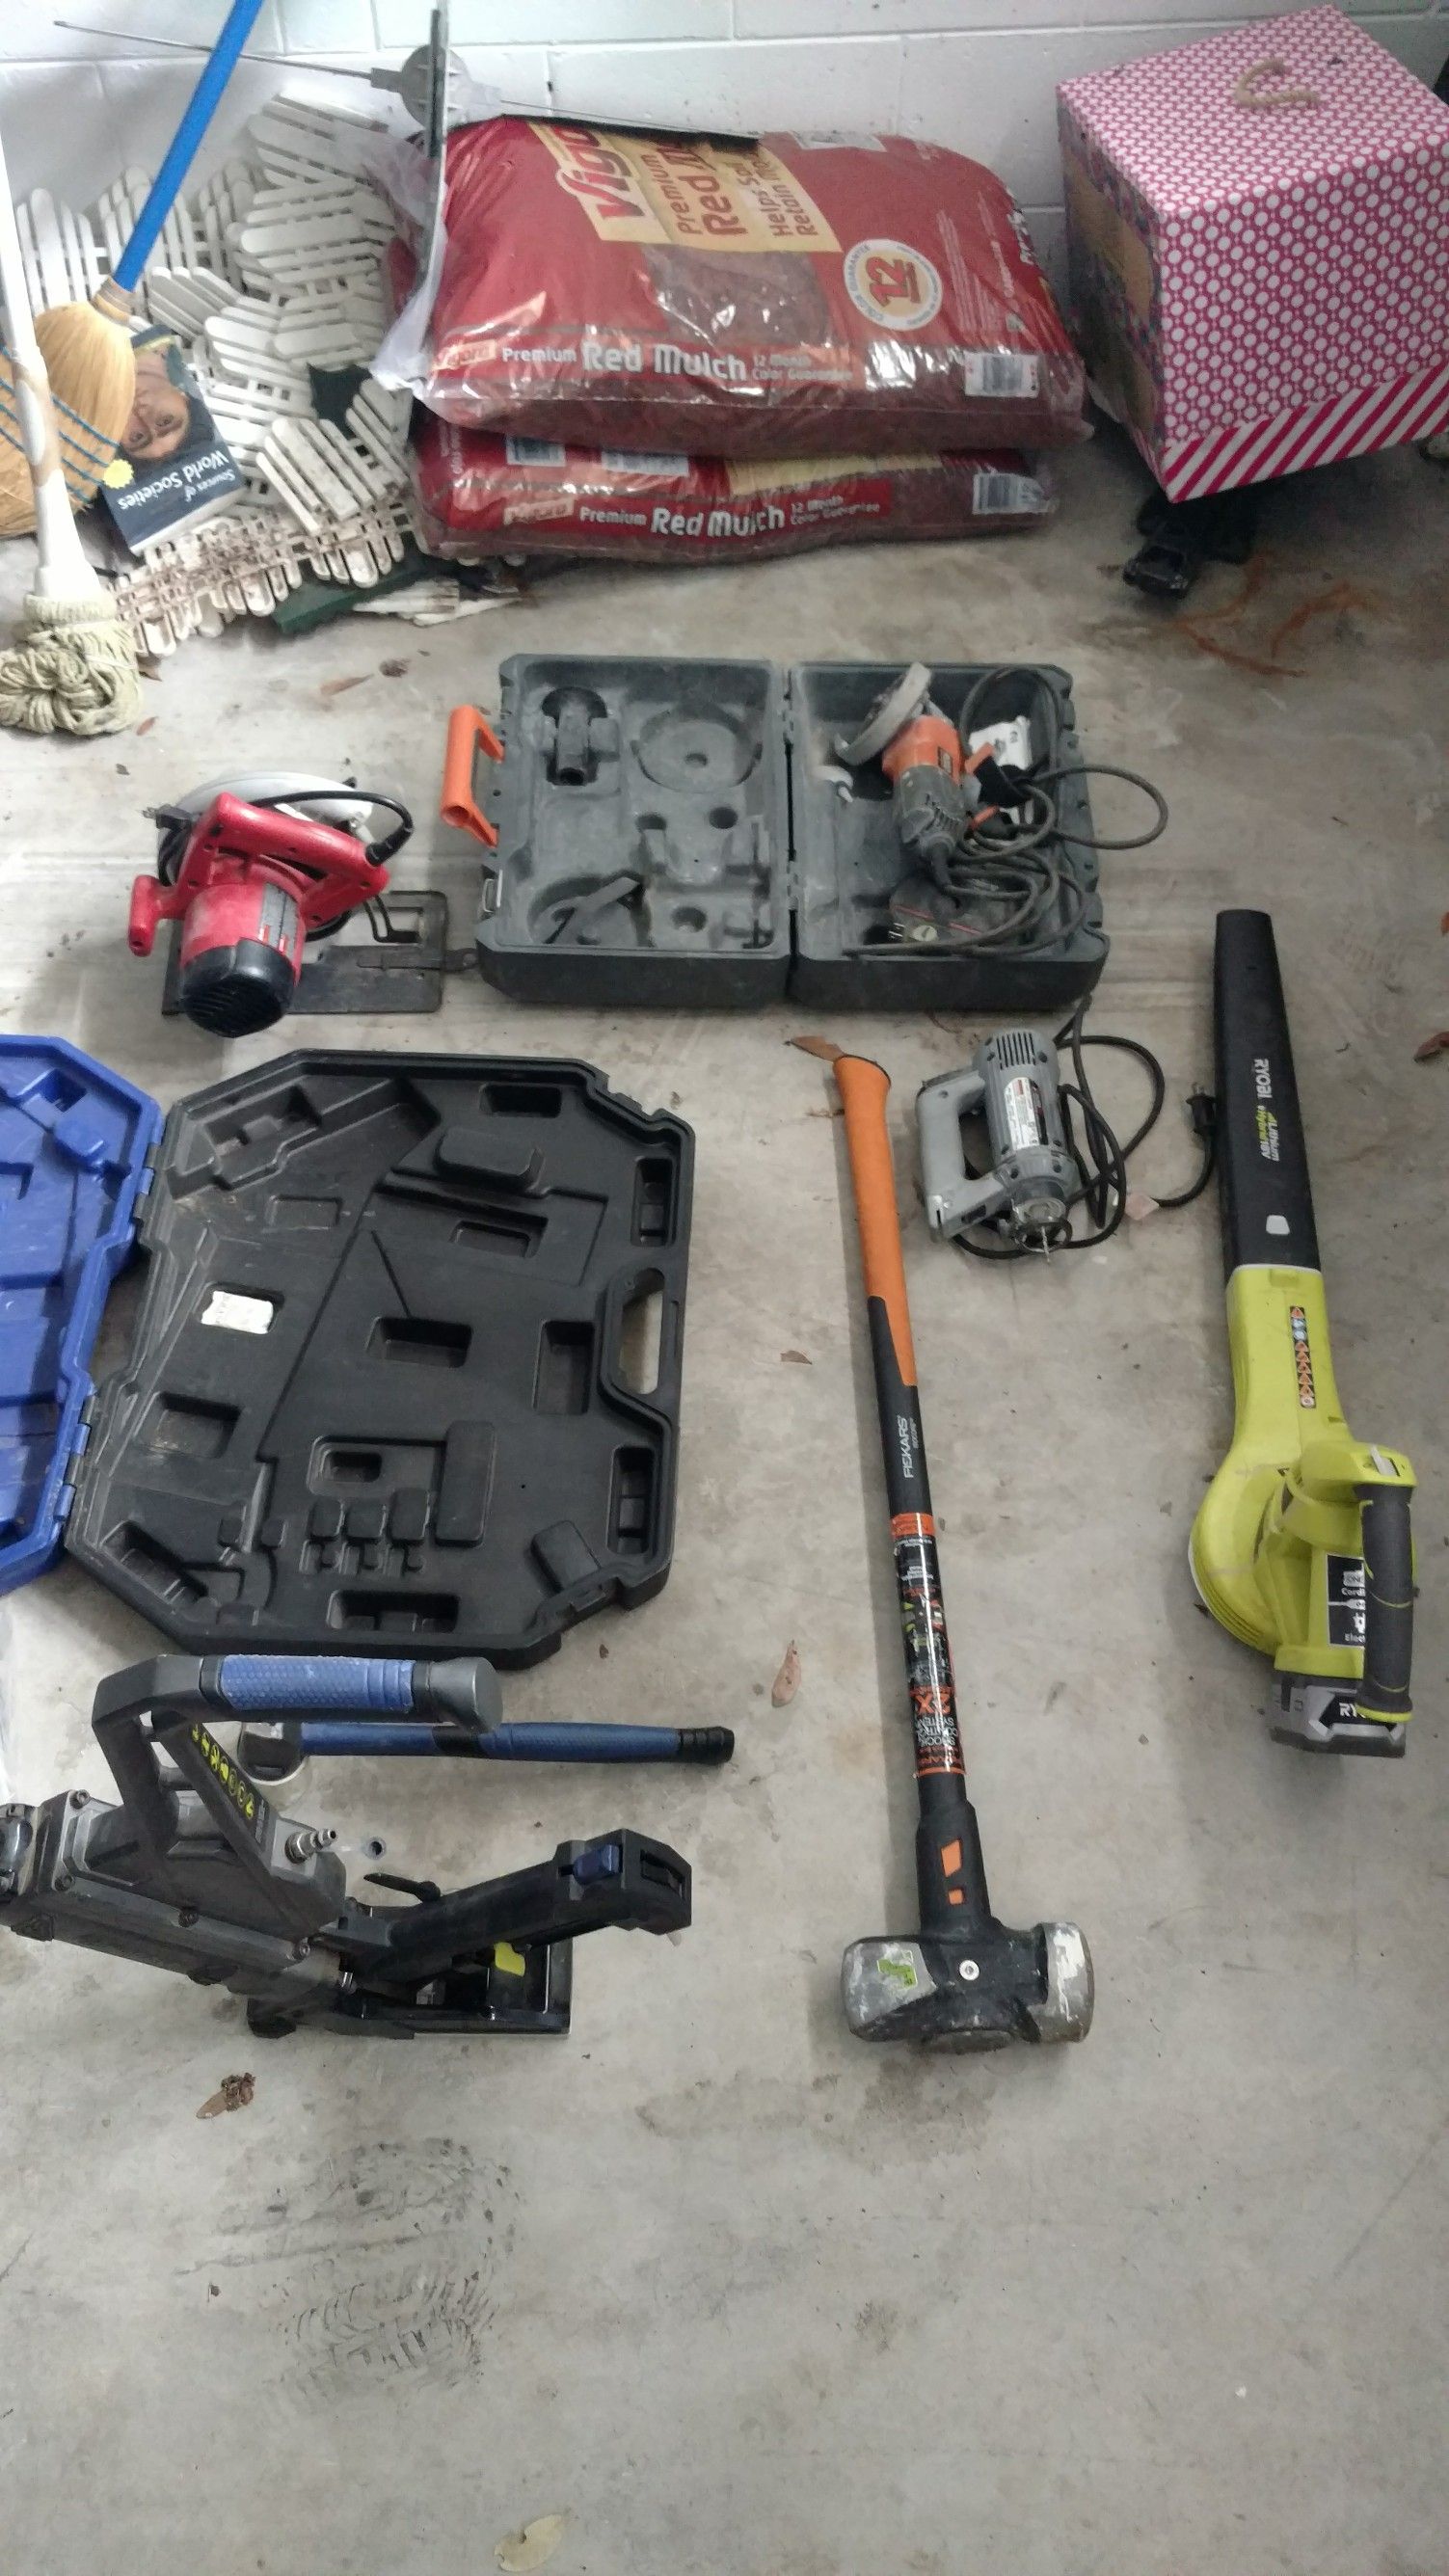 Flooring Nailer, Saw, Sledgehammer, etc